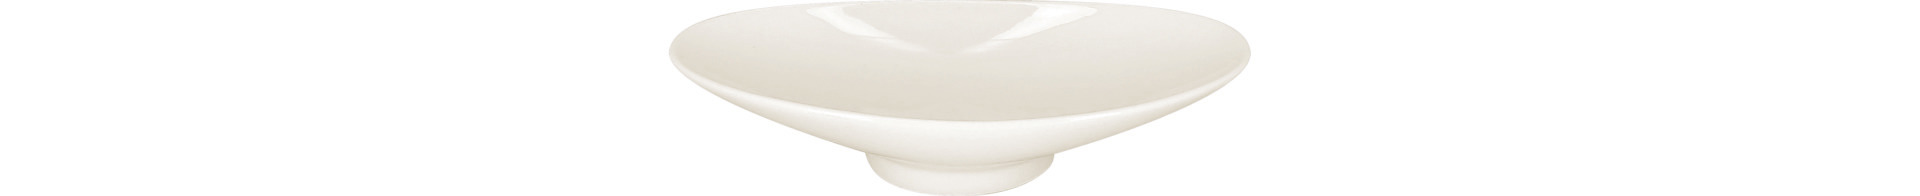 Schale oval 205 x 100 mm / 0,20 l plain-white